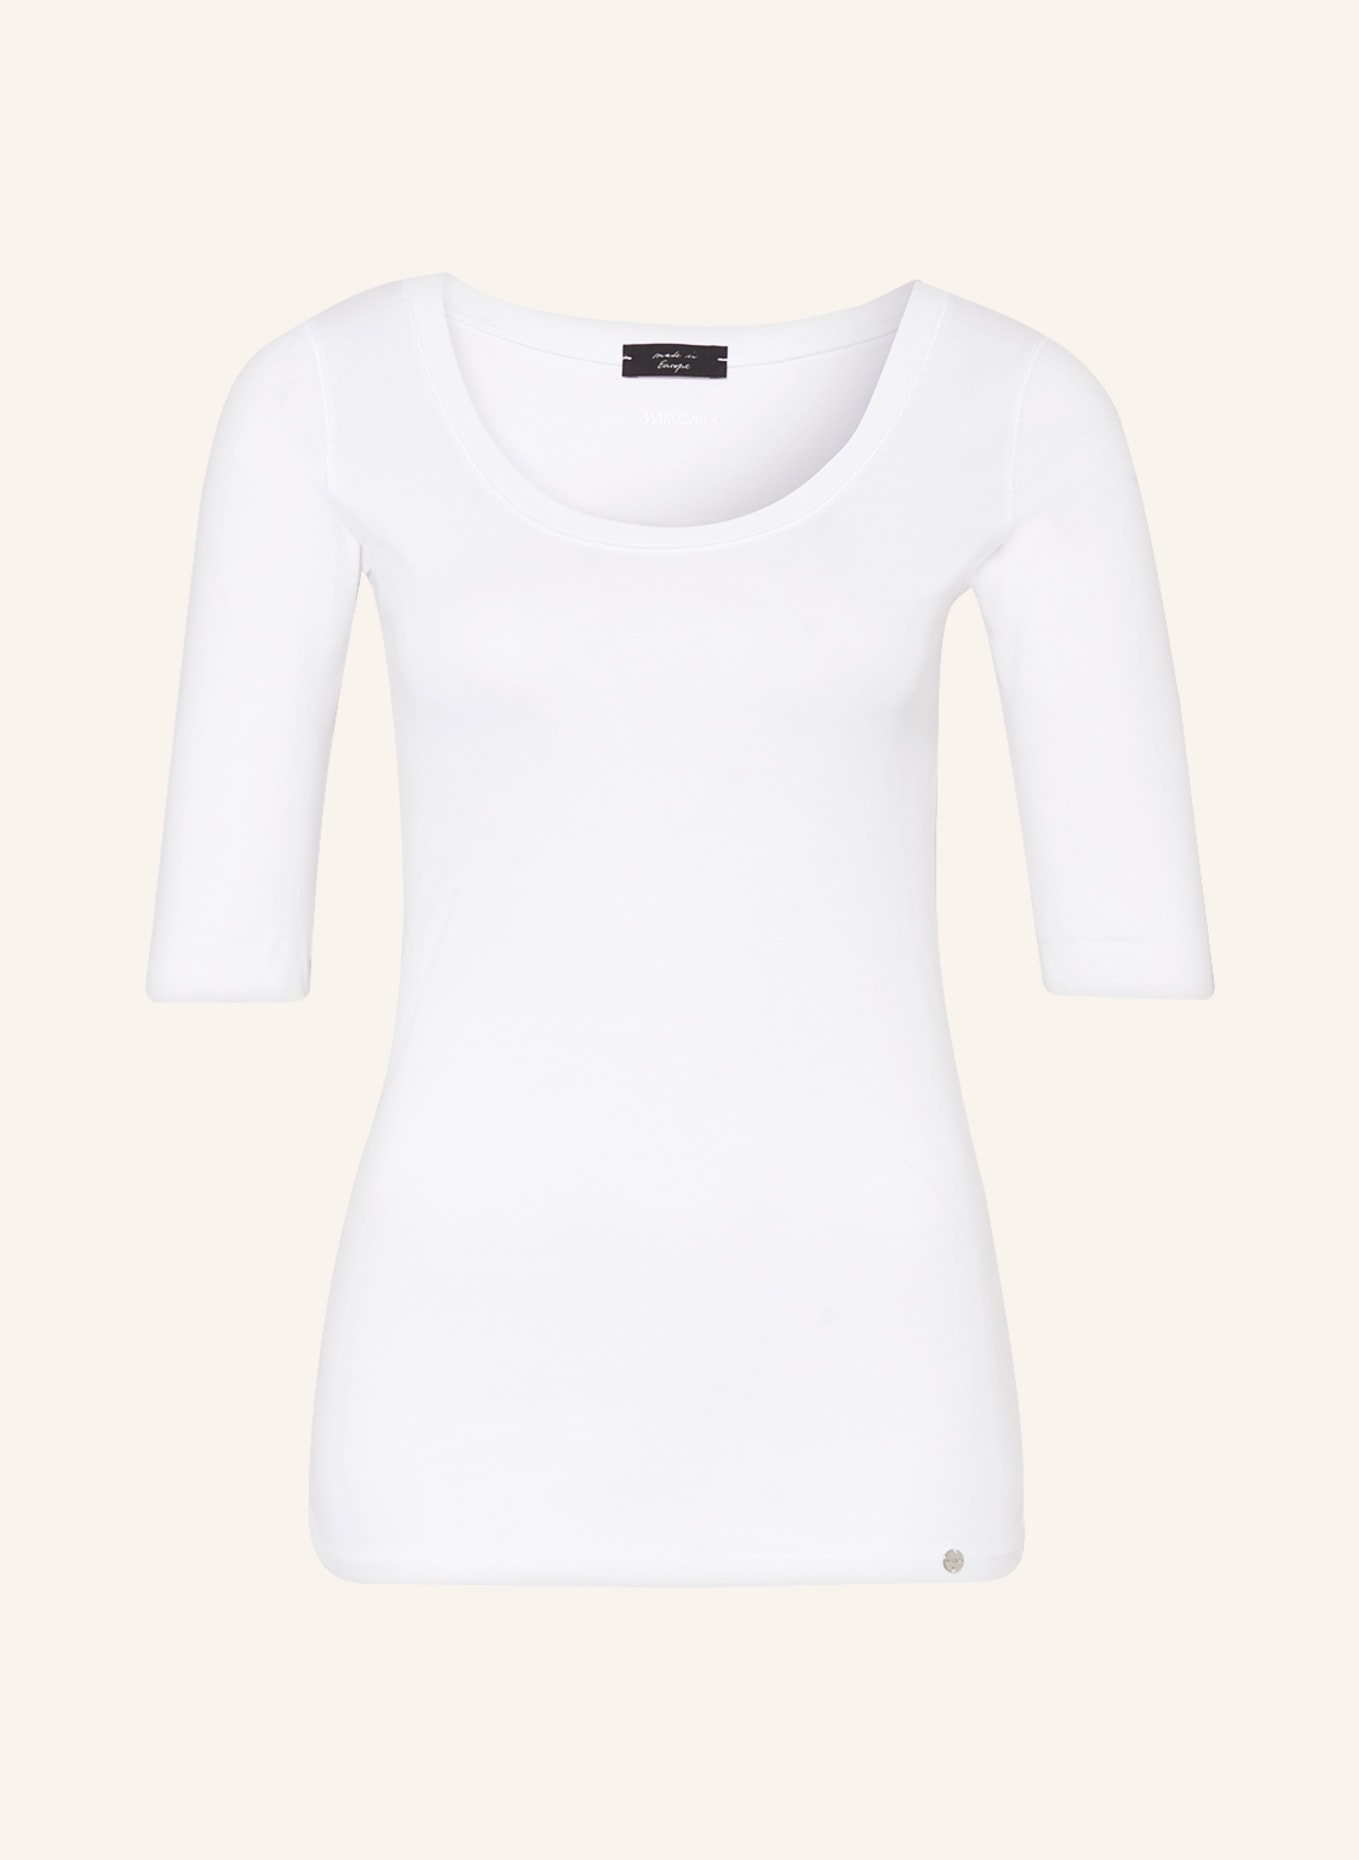 MARC CAIN T-shirt, Color: WHITE (Image 1)